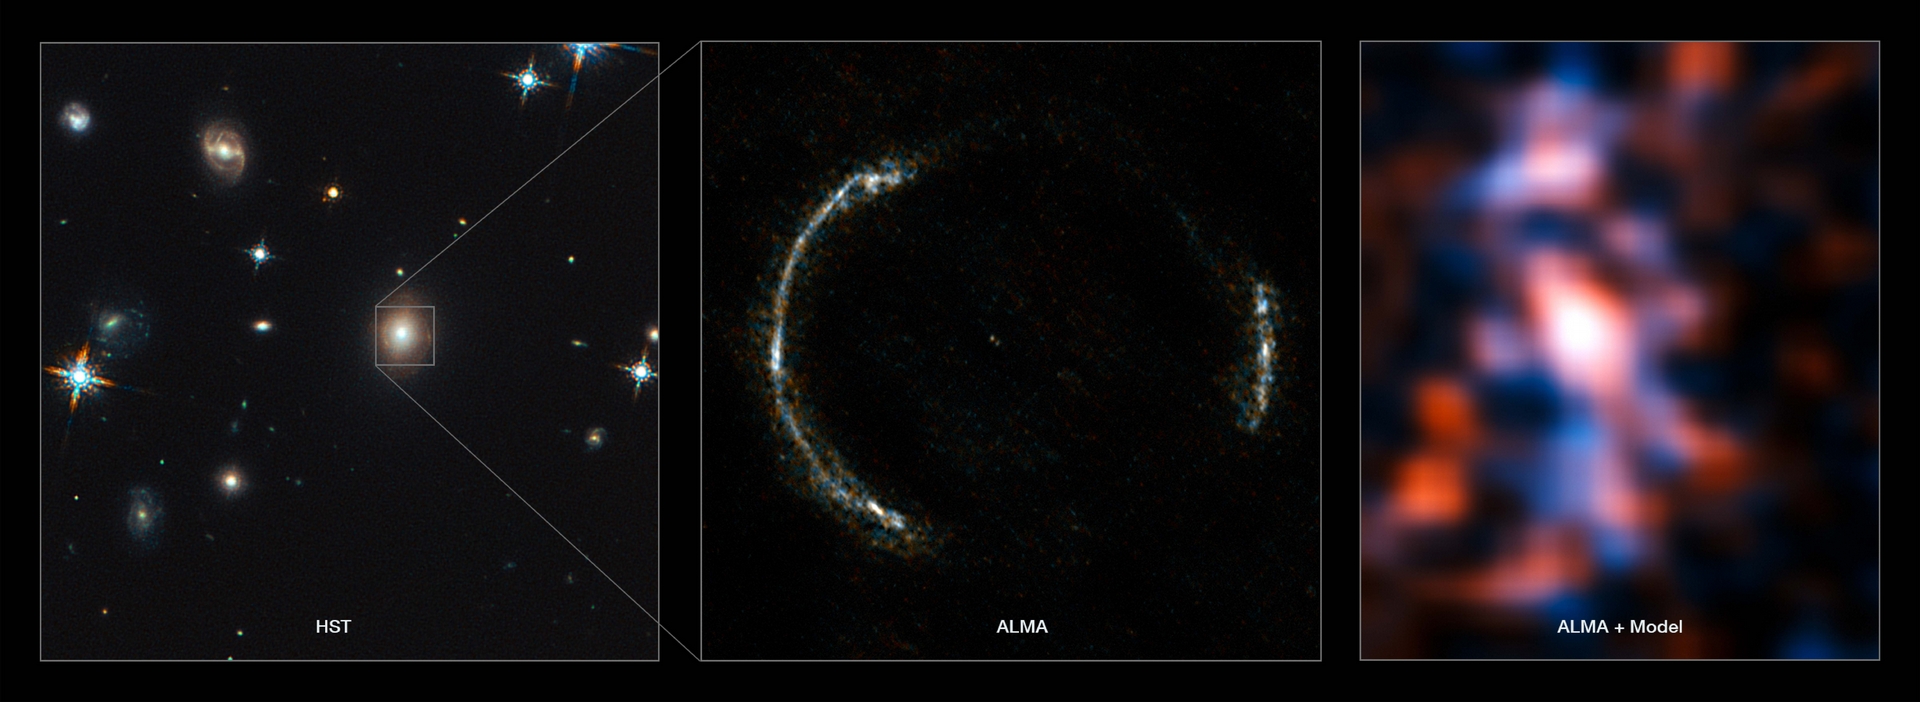 天文學家從 ALMA 影像（中）重建出背景星系的樣貌（右)，目睹 120 億光年外的異世界。透鏡星系是橢圓星系，通常不會發出電波，所以在 ALMA 的波段可以不受透鏡星系干擾，清楚分辨來自背景星系的光。再加上 ALMA 有夠好的解析度和靈敏度，才能看清楚愛因斯坦環，並執行以上的計算。 圖片來源│ ALMA (NRAO/ESO/NAOJ)/Y. Tamura (The University of Tokyo)/Mark Swinbank (Durham University)。 